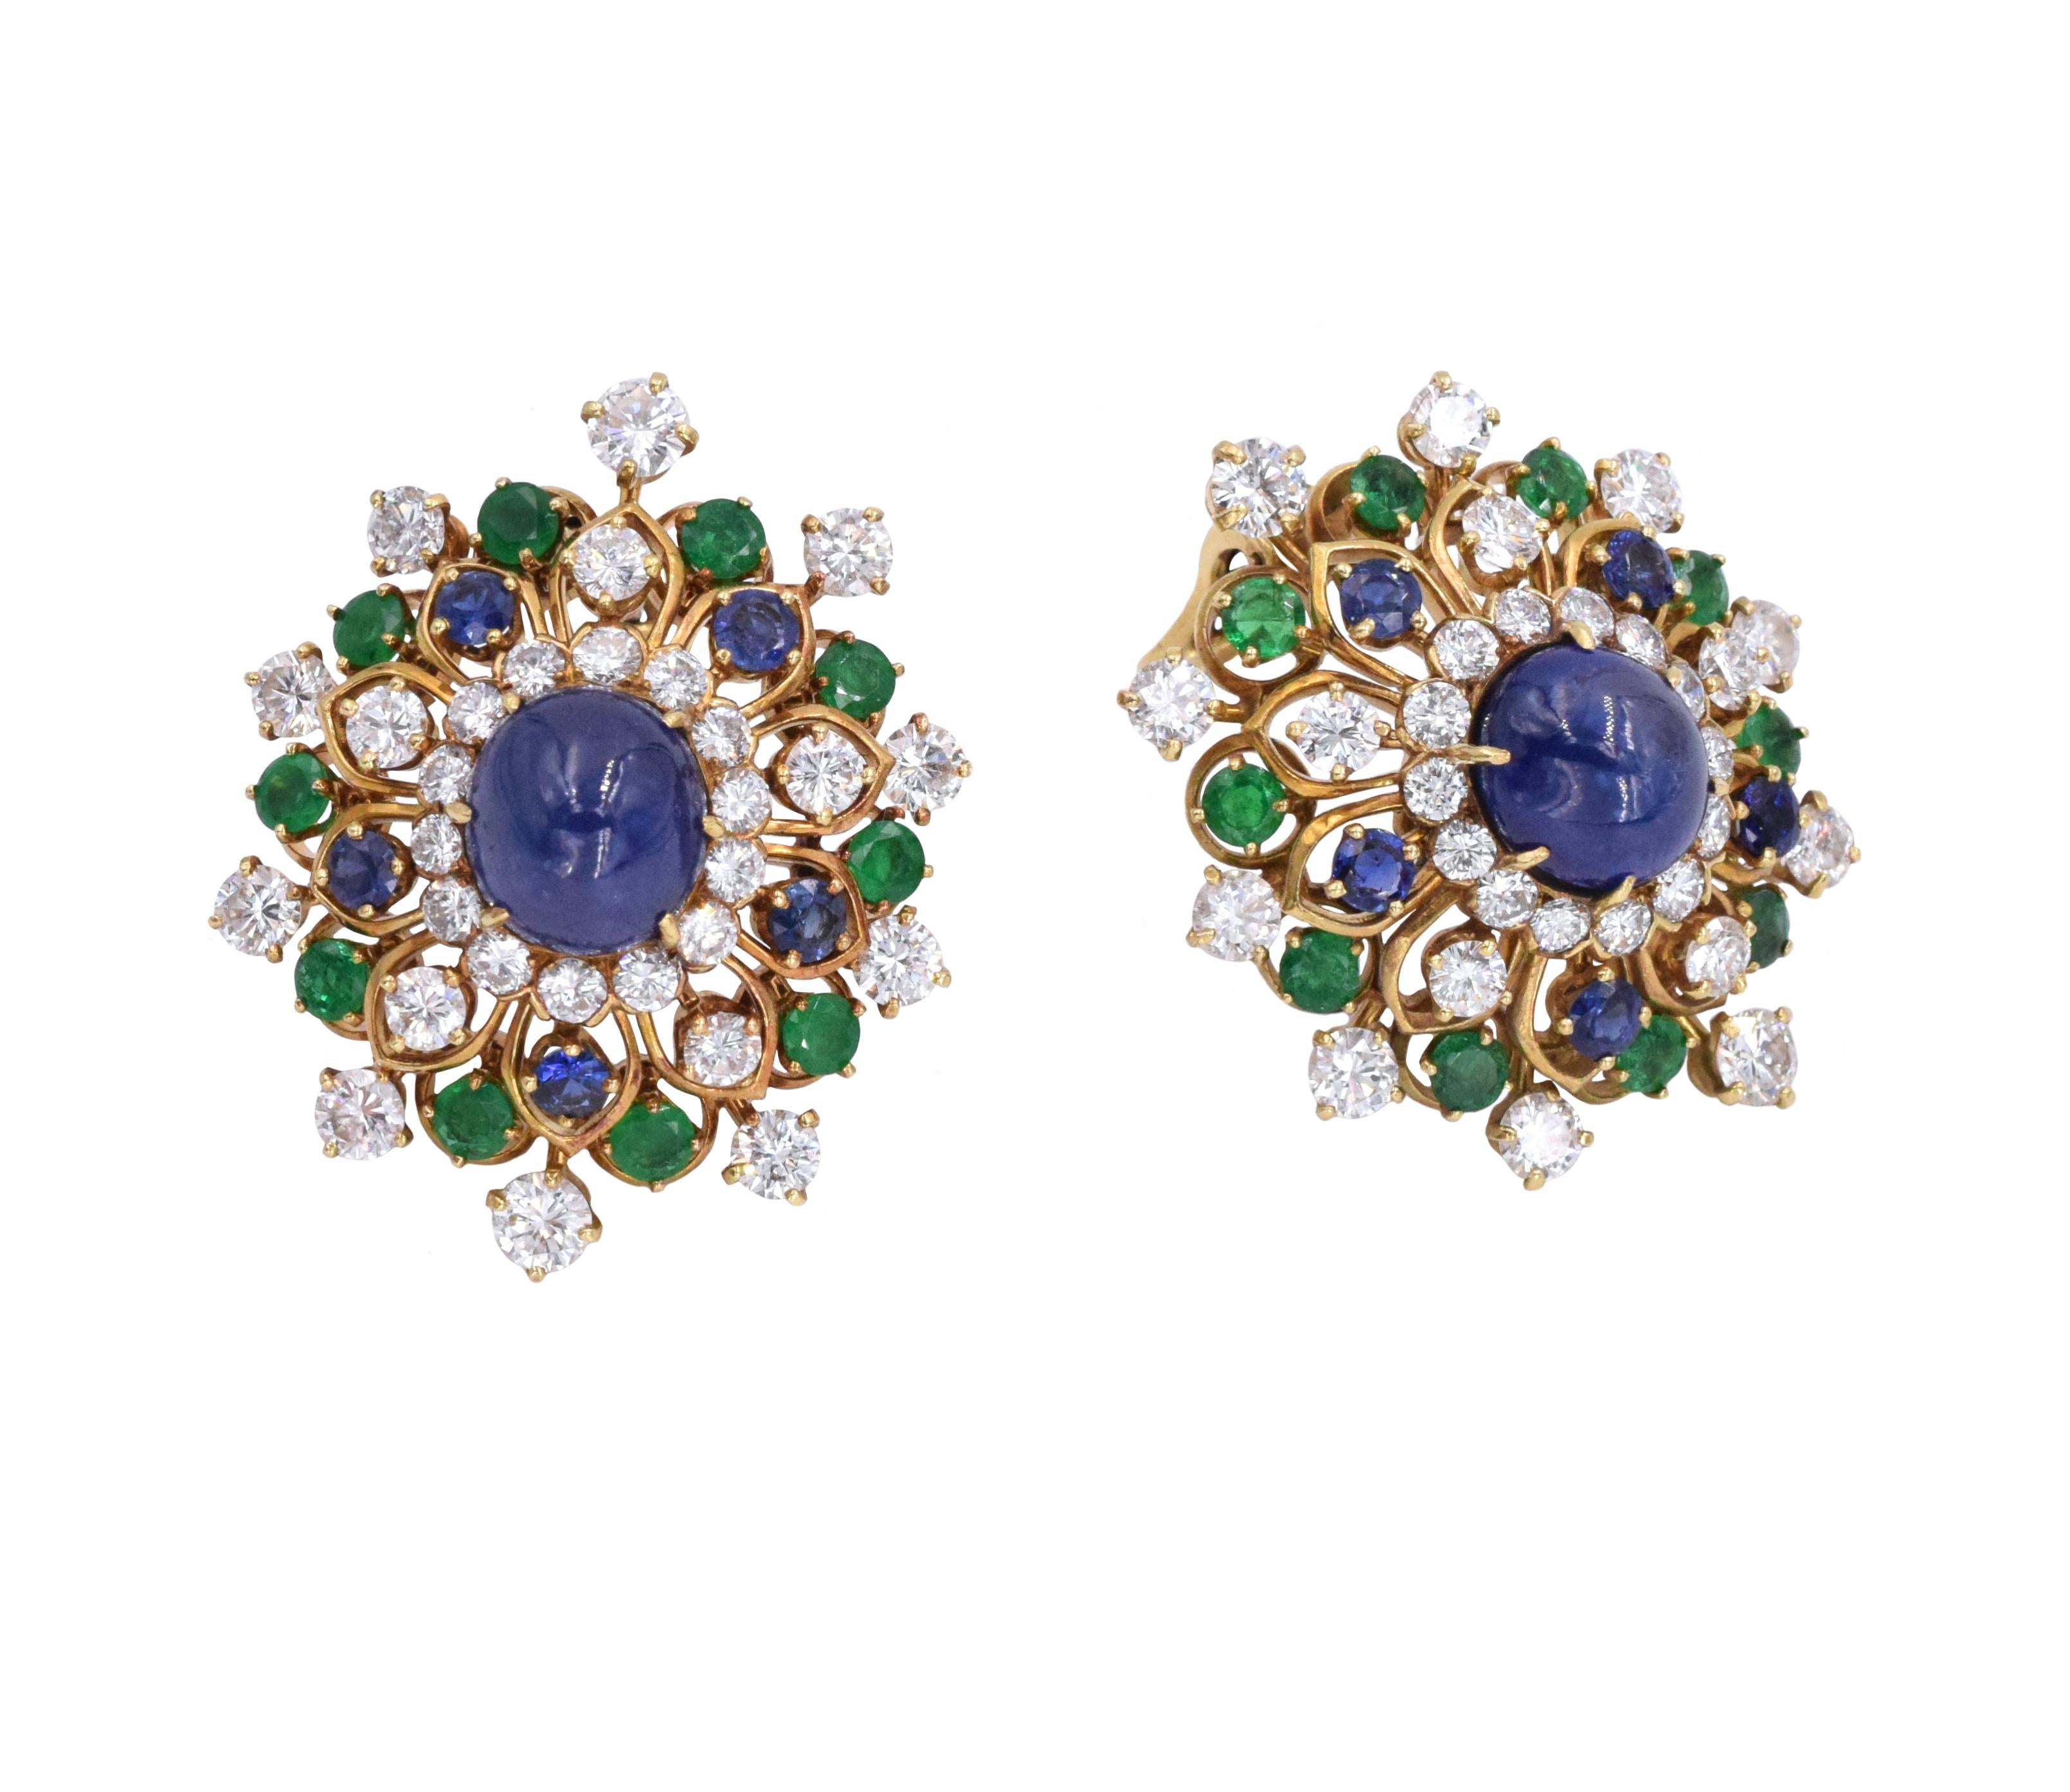 Artist Vintage Van Cleef & Arpels Diamond and Gemstone Earrings